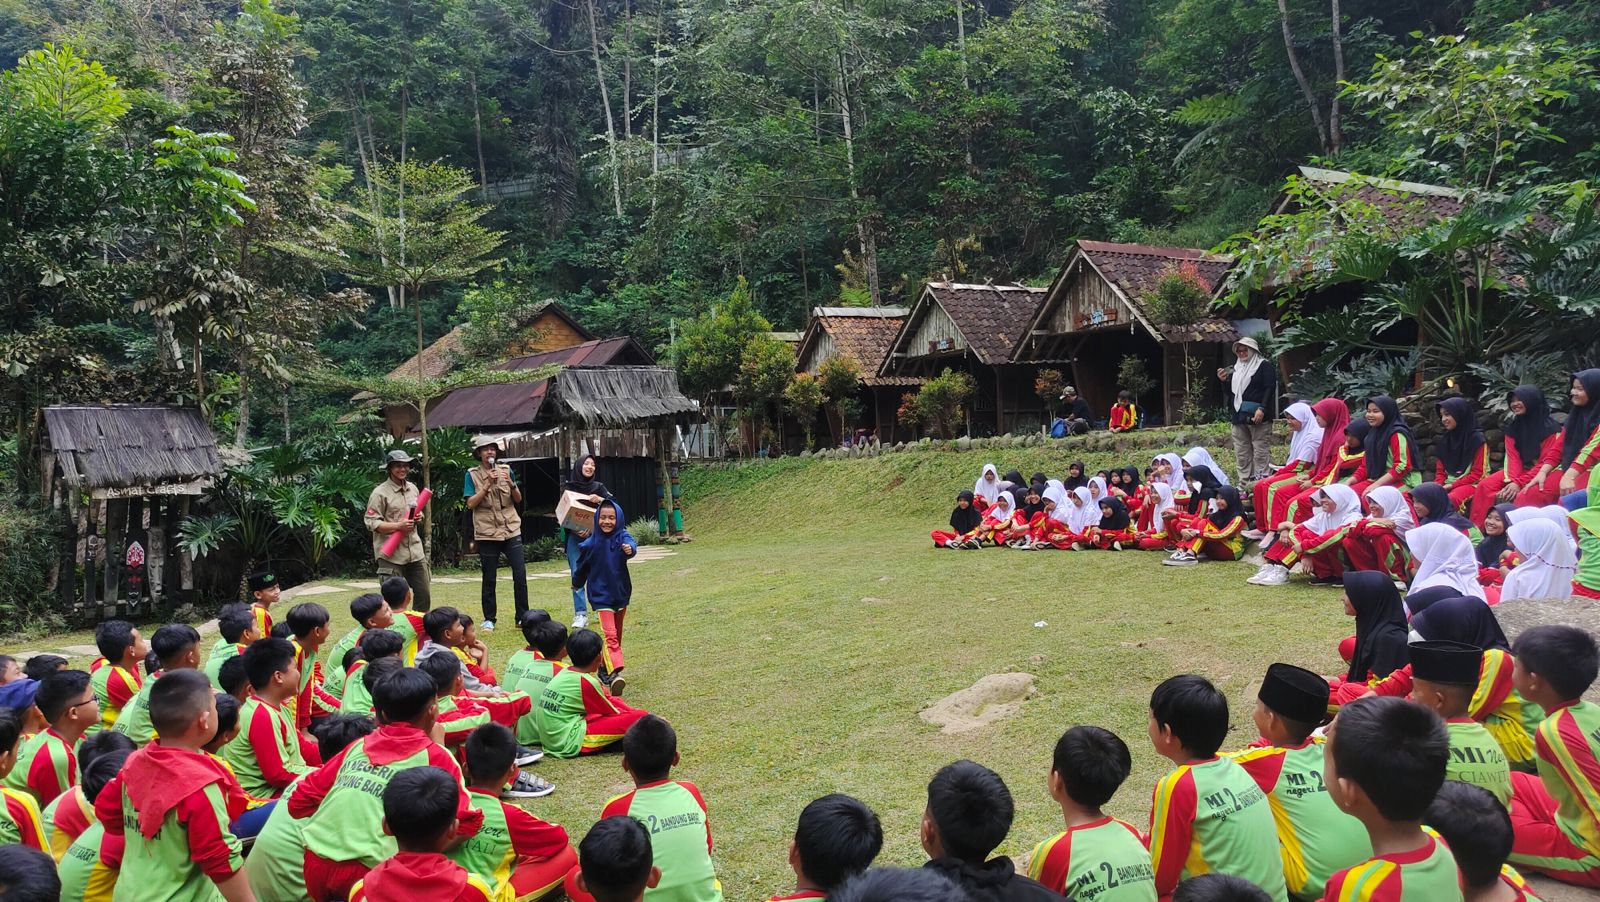 Sambut Hut RI, Kampung Karuhun Sediakan Tiket Gratis untuk yang Bernama Agus